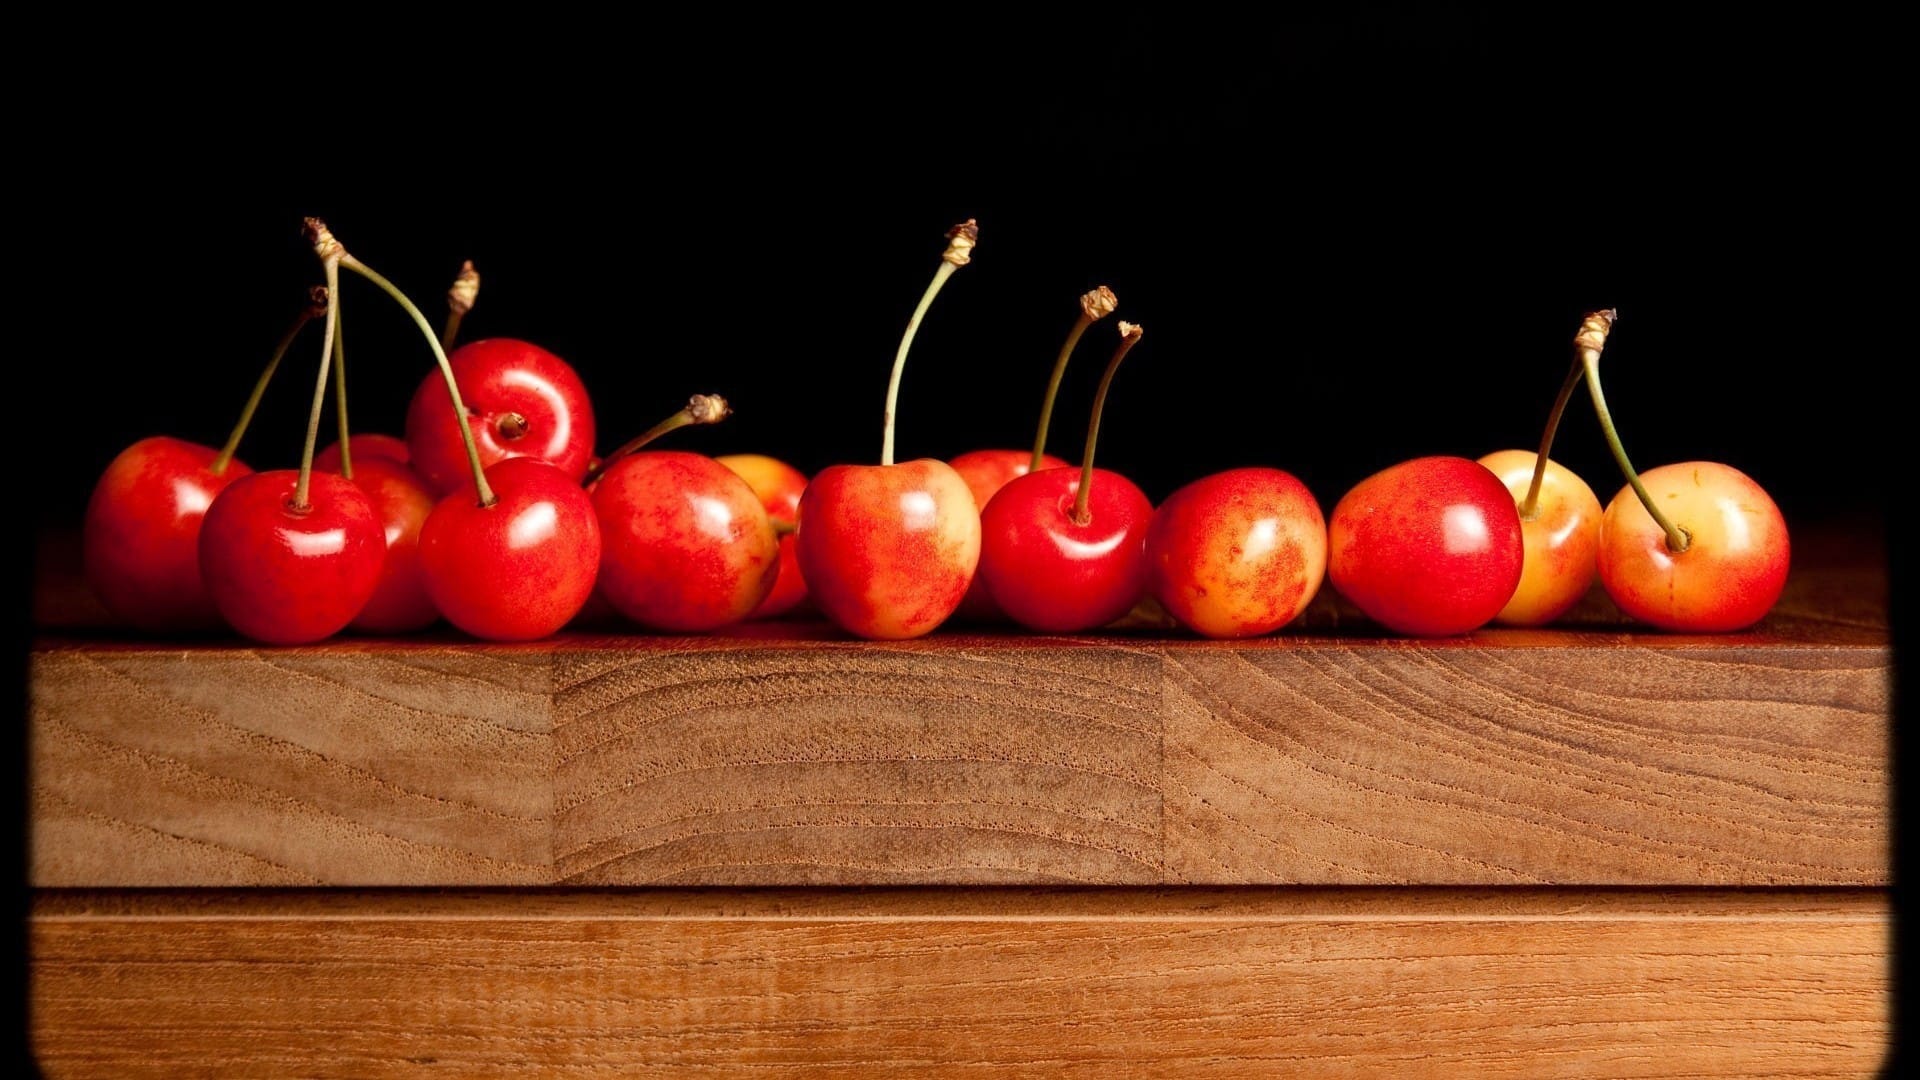 香甜可口的各类水果高清图片桌面壁纸